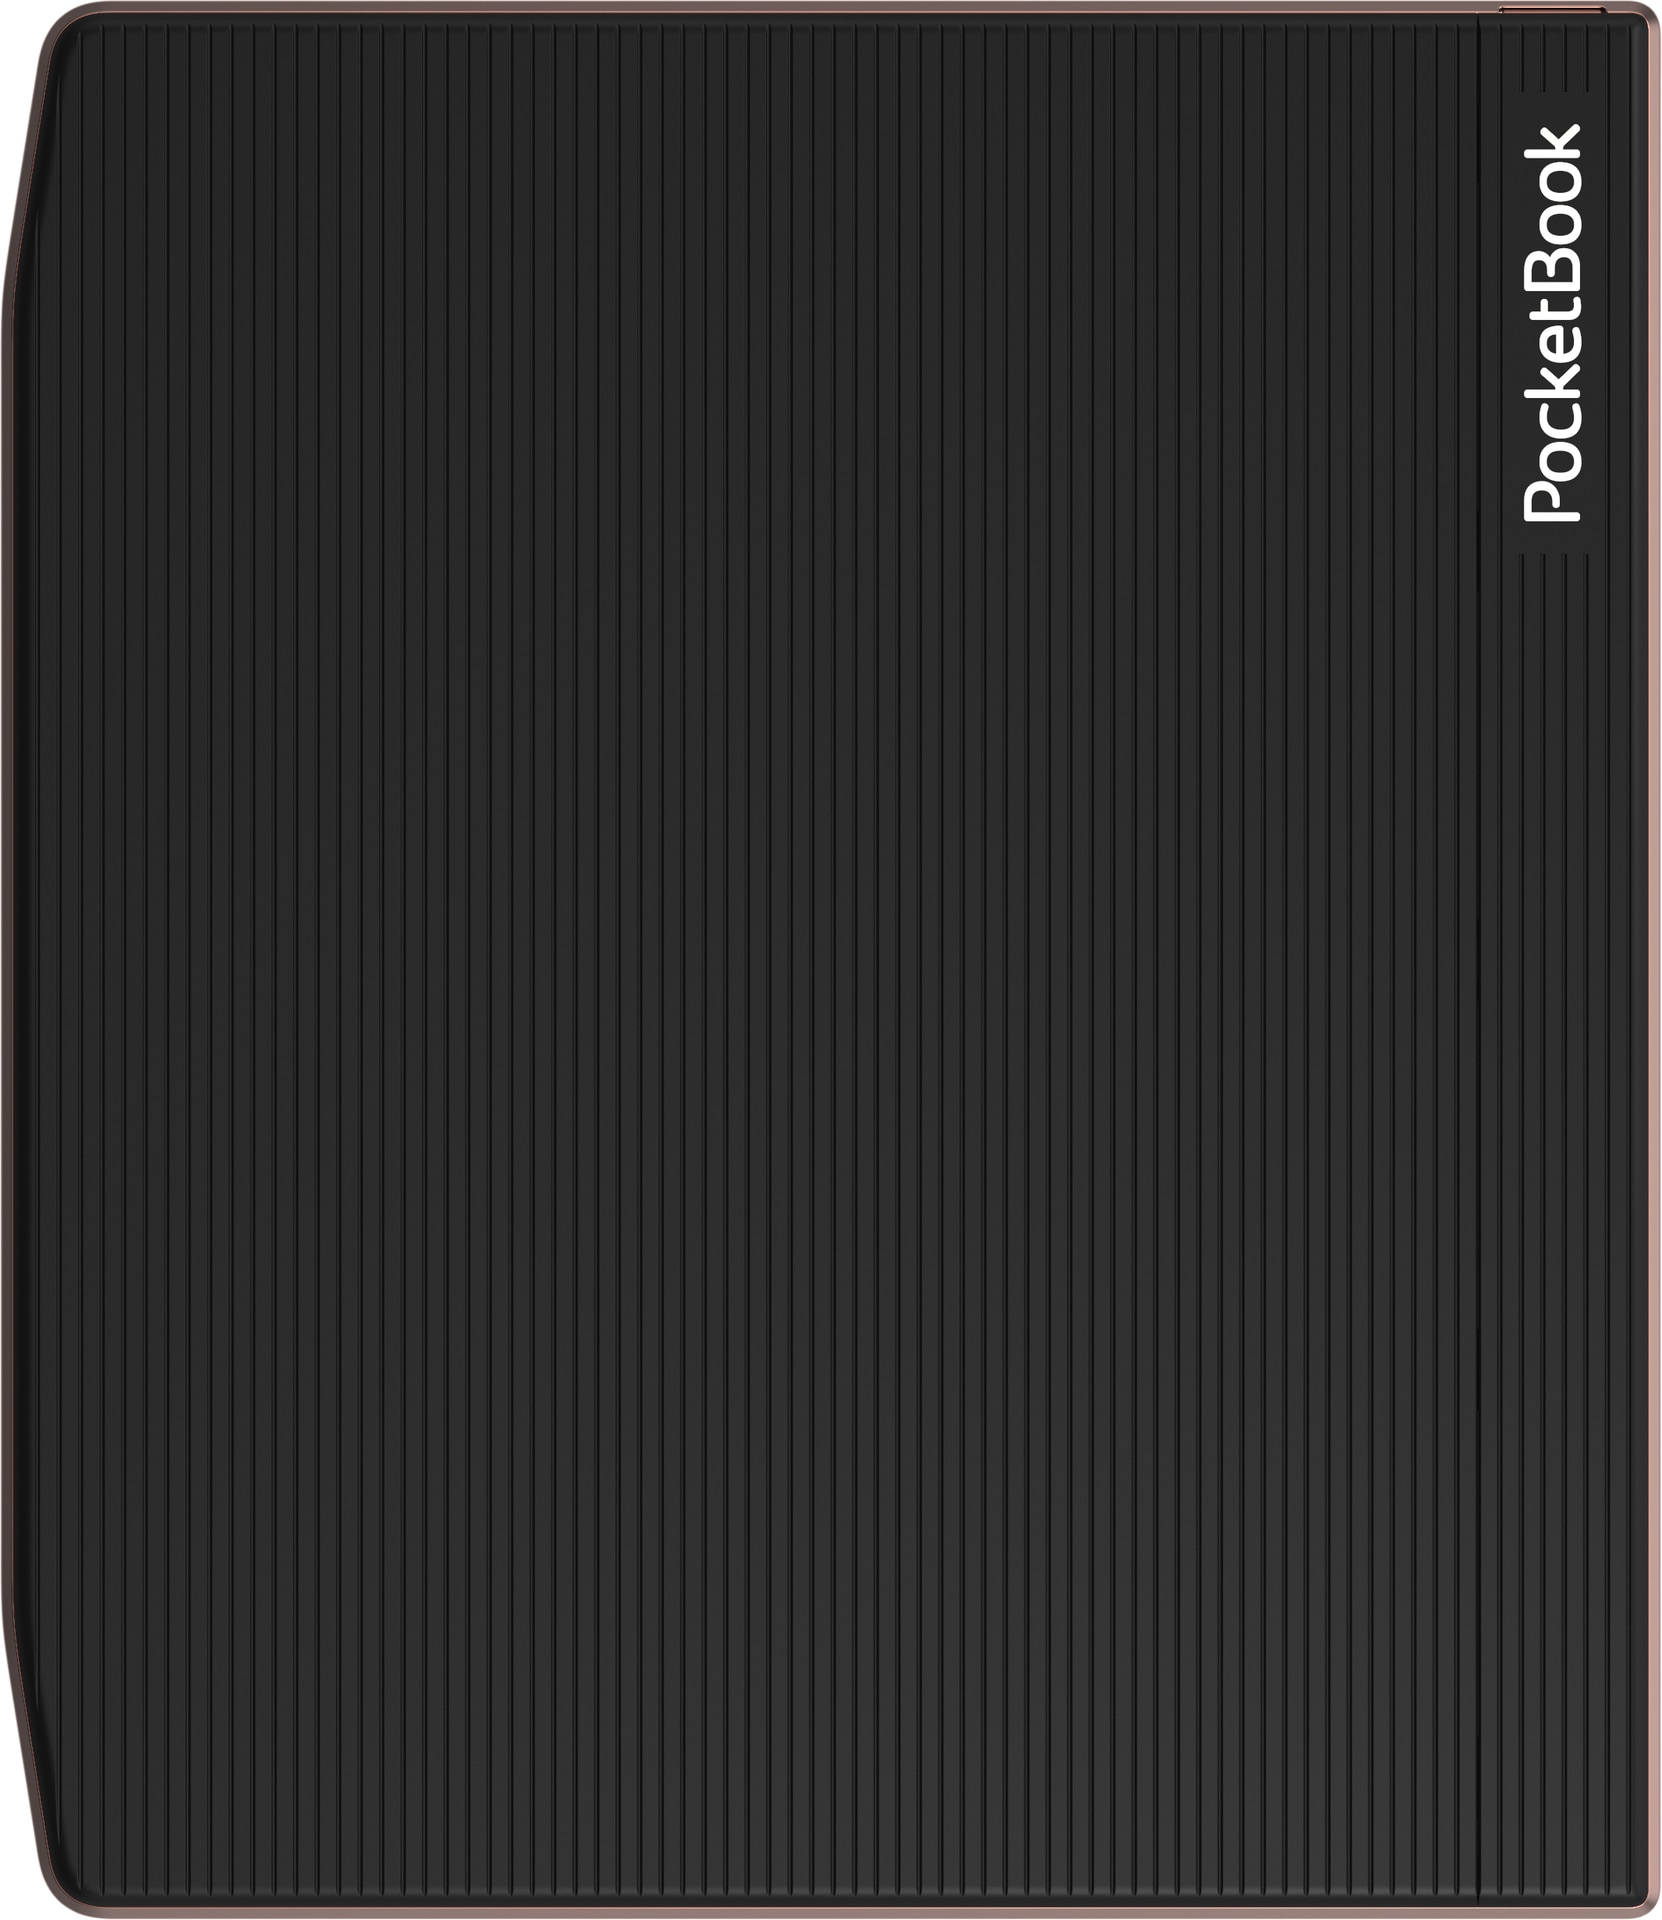 PocketBook E-Book »Era - 64GB«